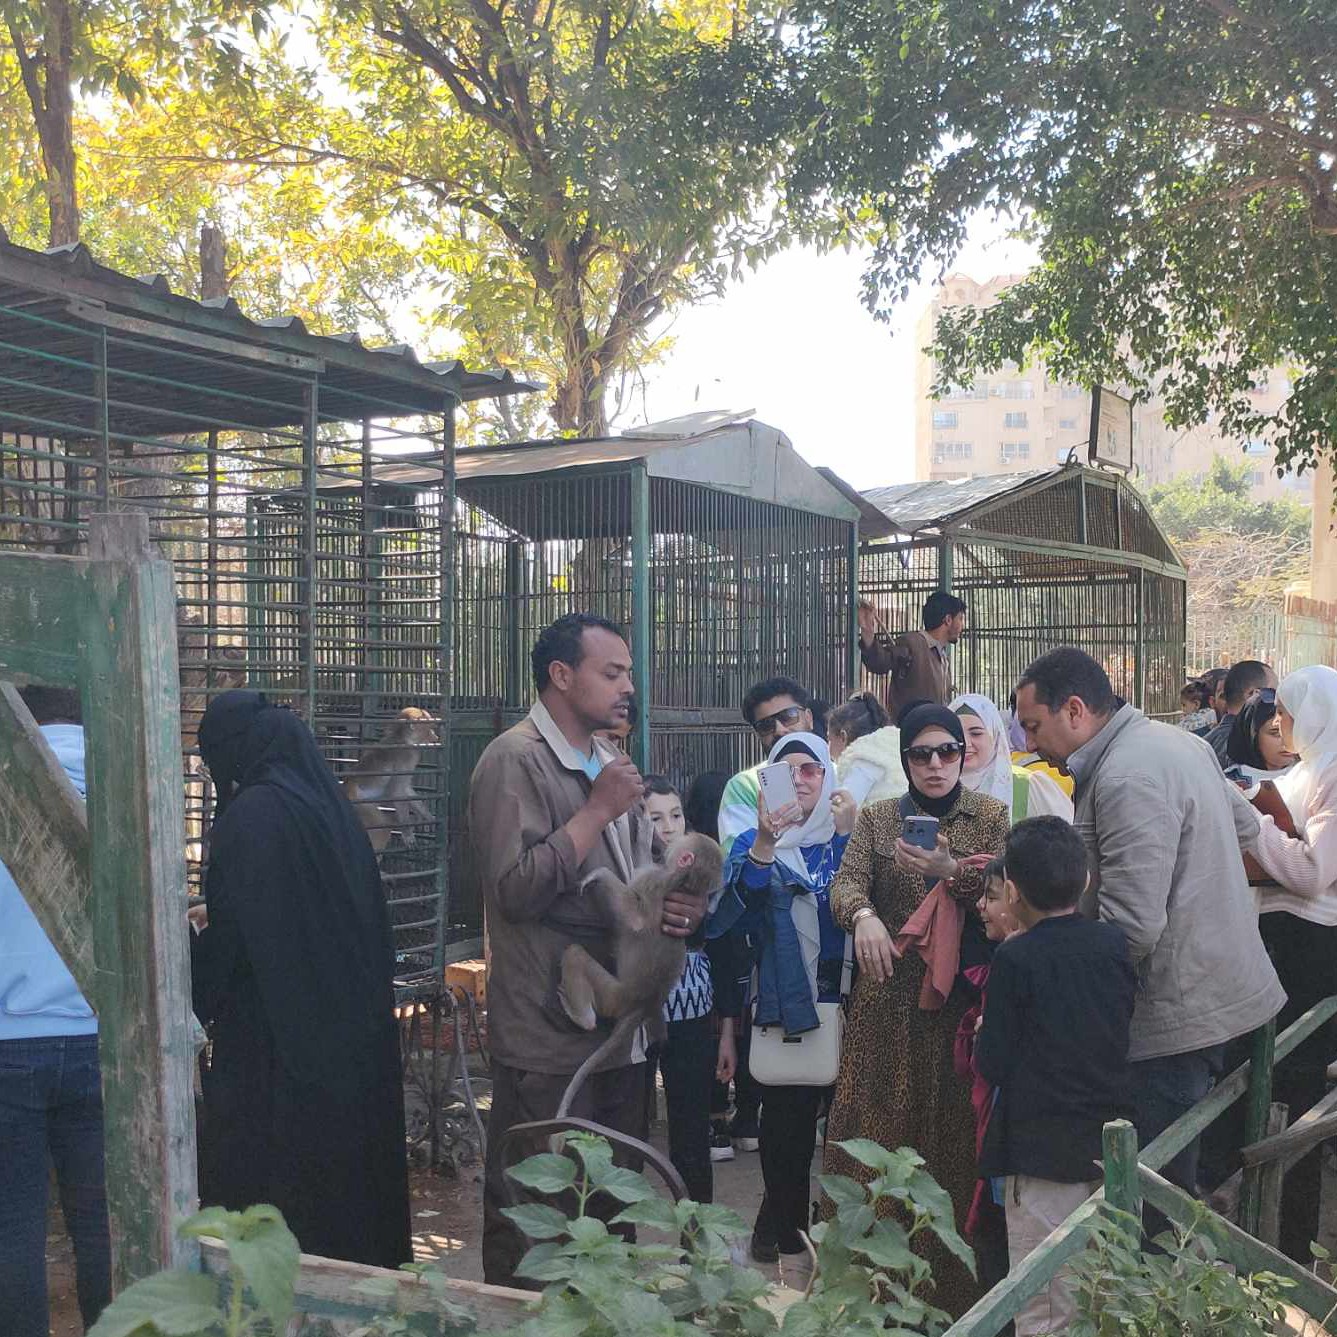 التقاط الصور مع القرود داخل حديقة حيوان الإسكندرية